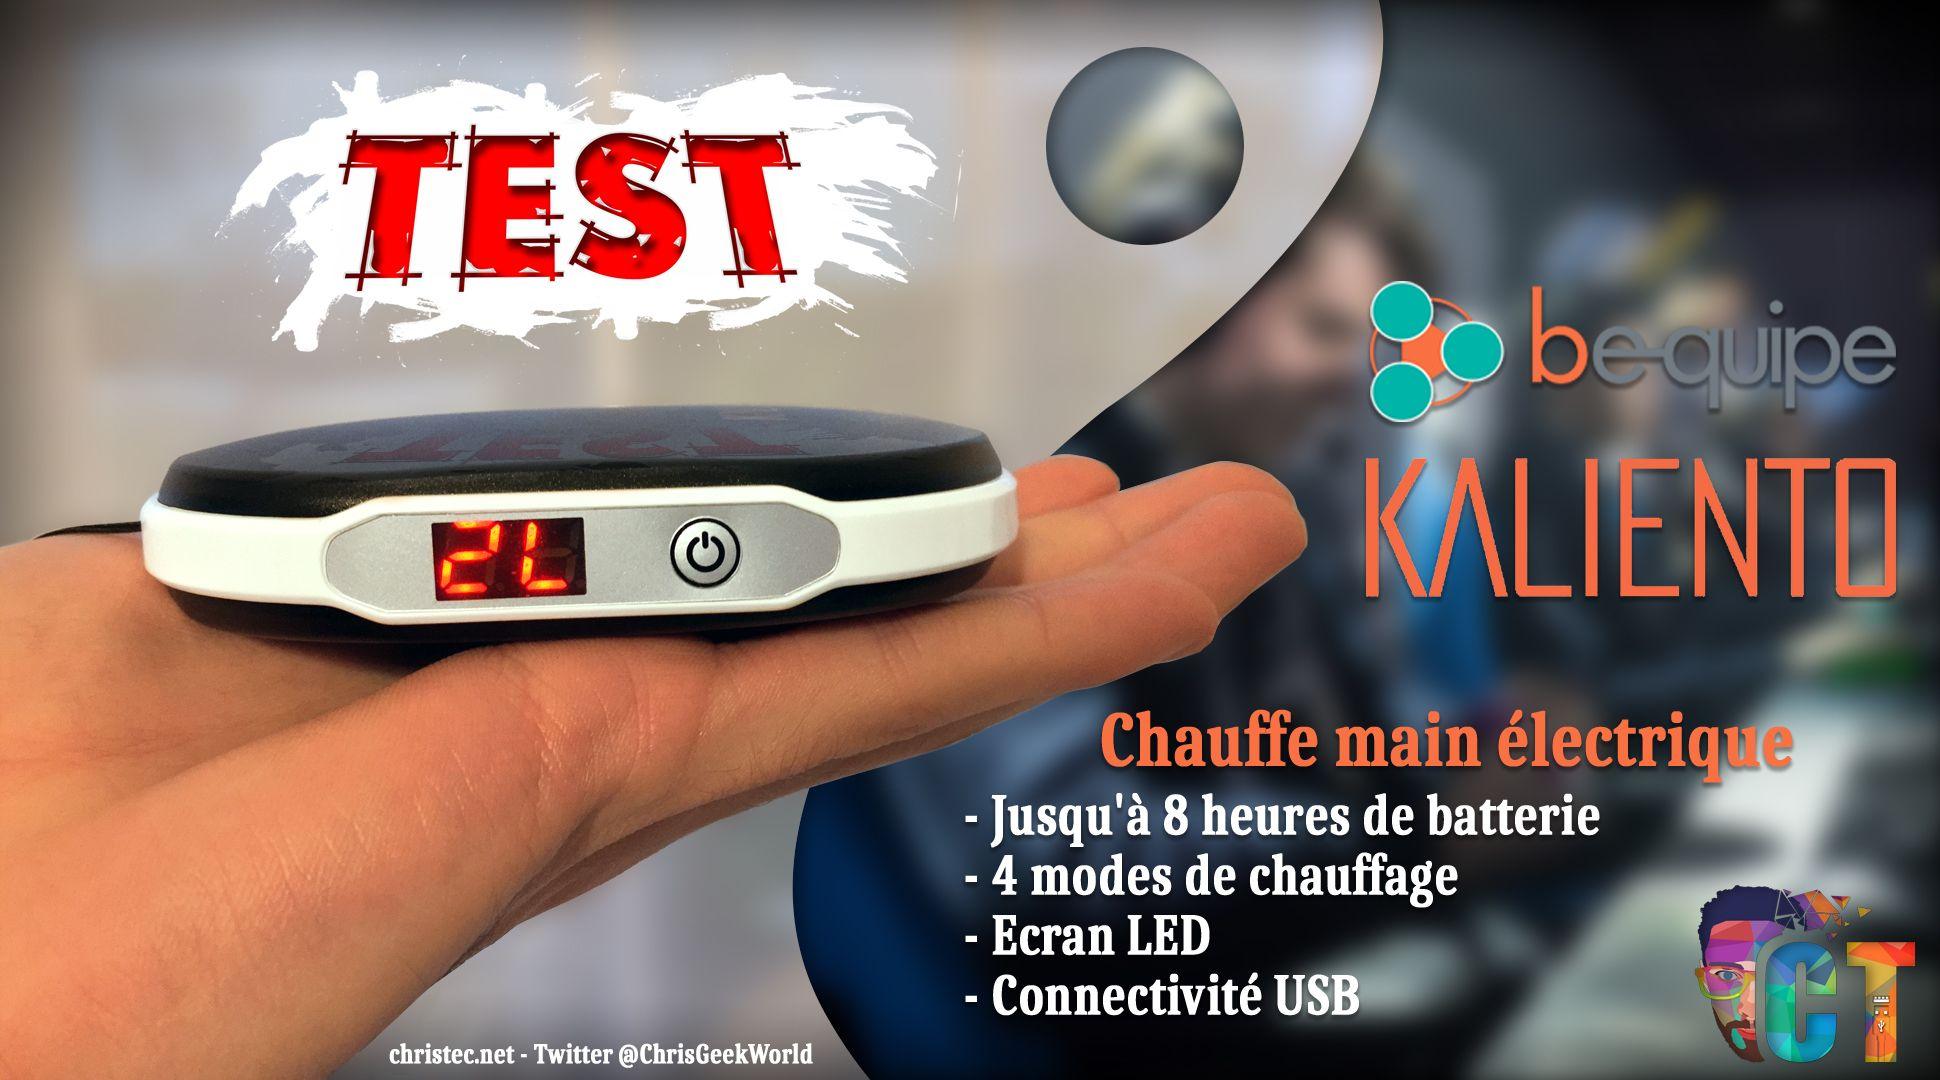 Kaliento test du chauffe-mains électrique de chez Bequipe Gaming